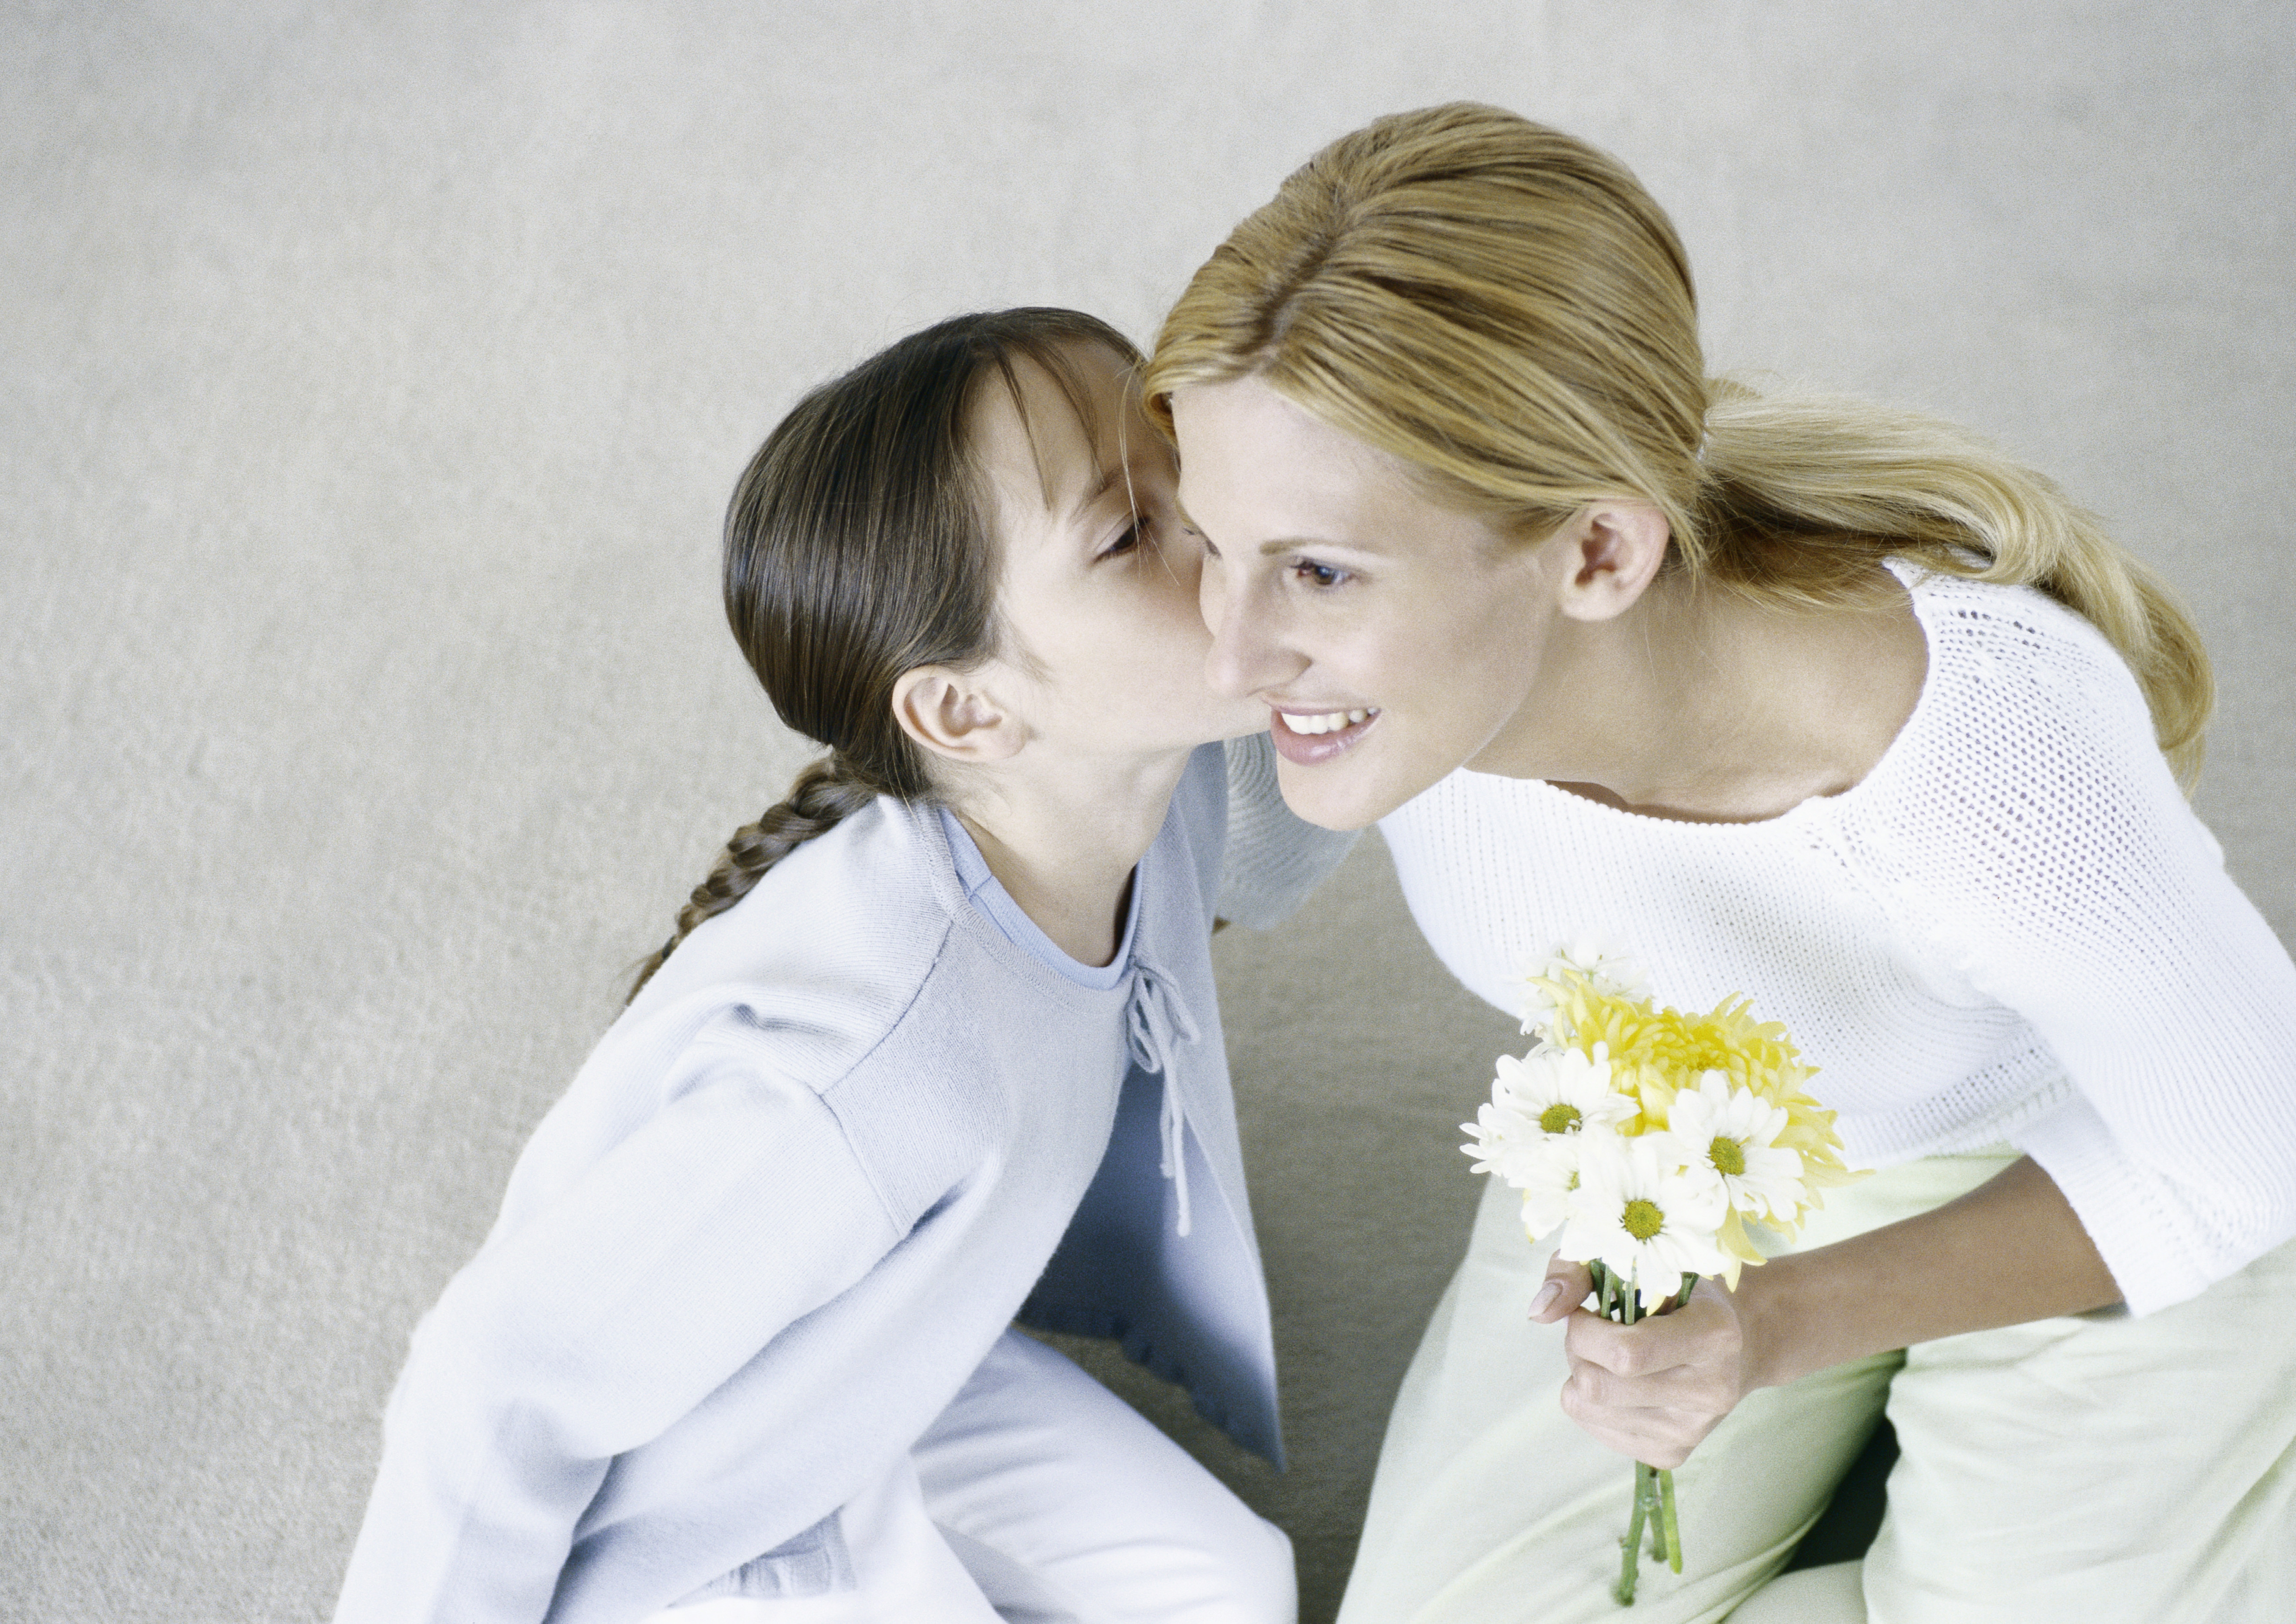 Frau hält Blumenstrauß, Mädchen küsst ihre Wange | Quelle: Getty Images